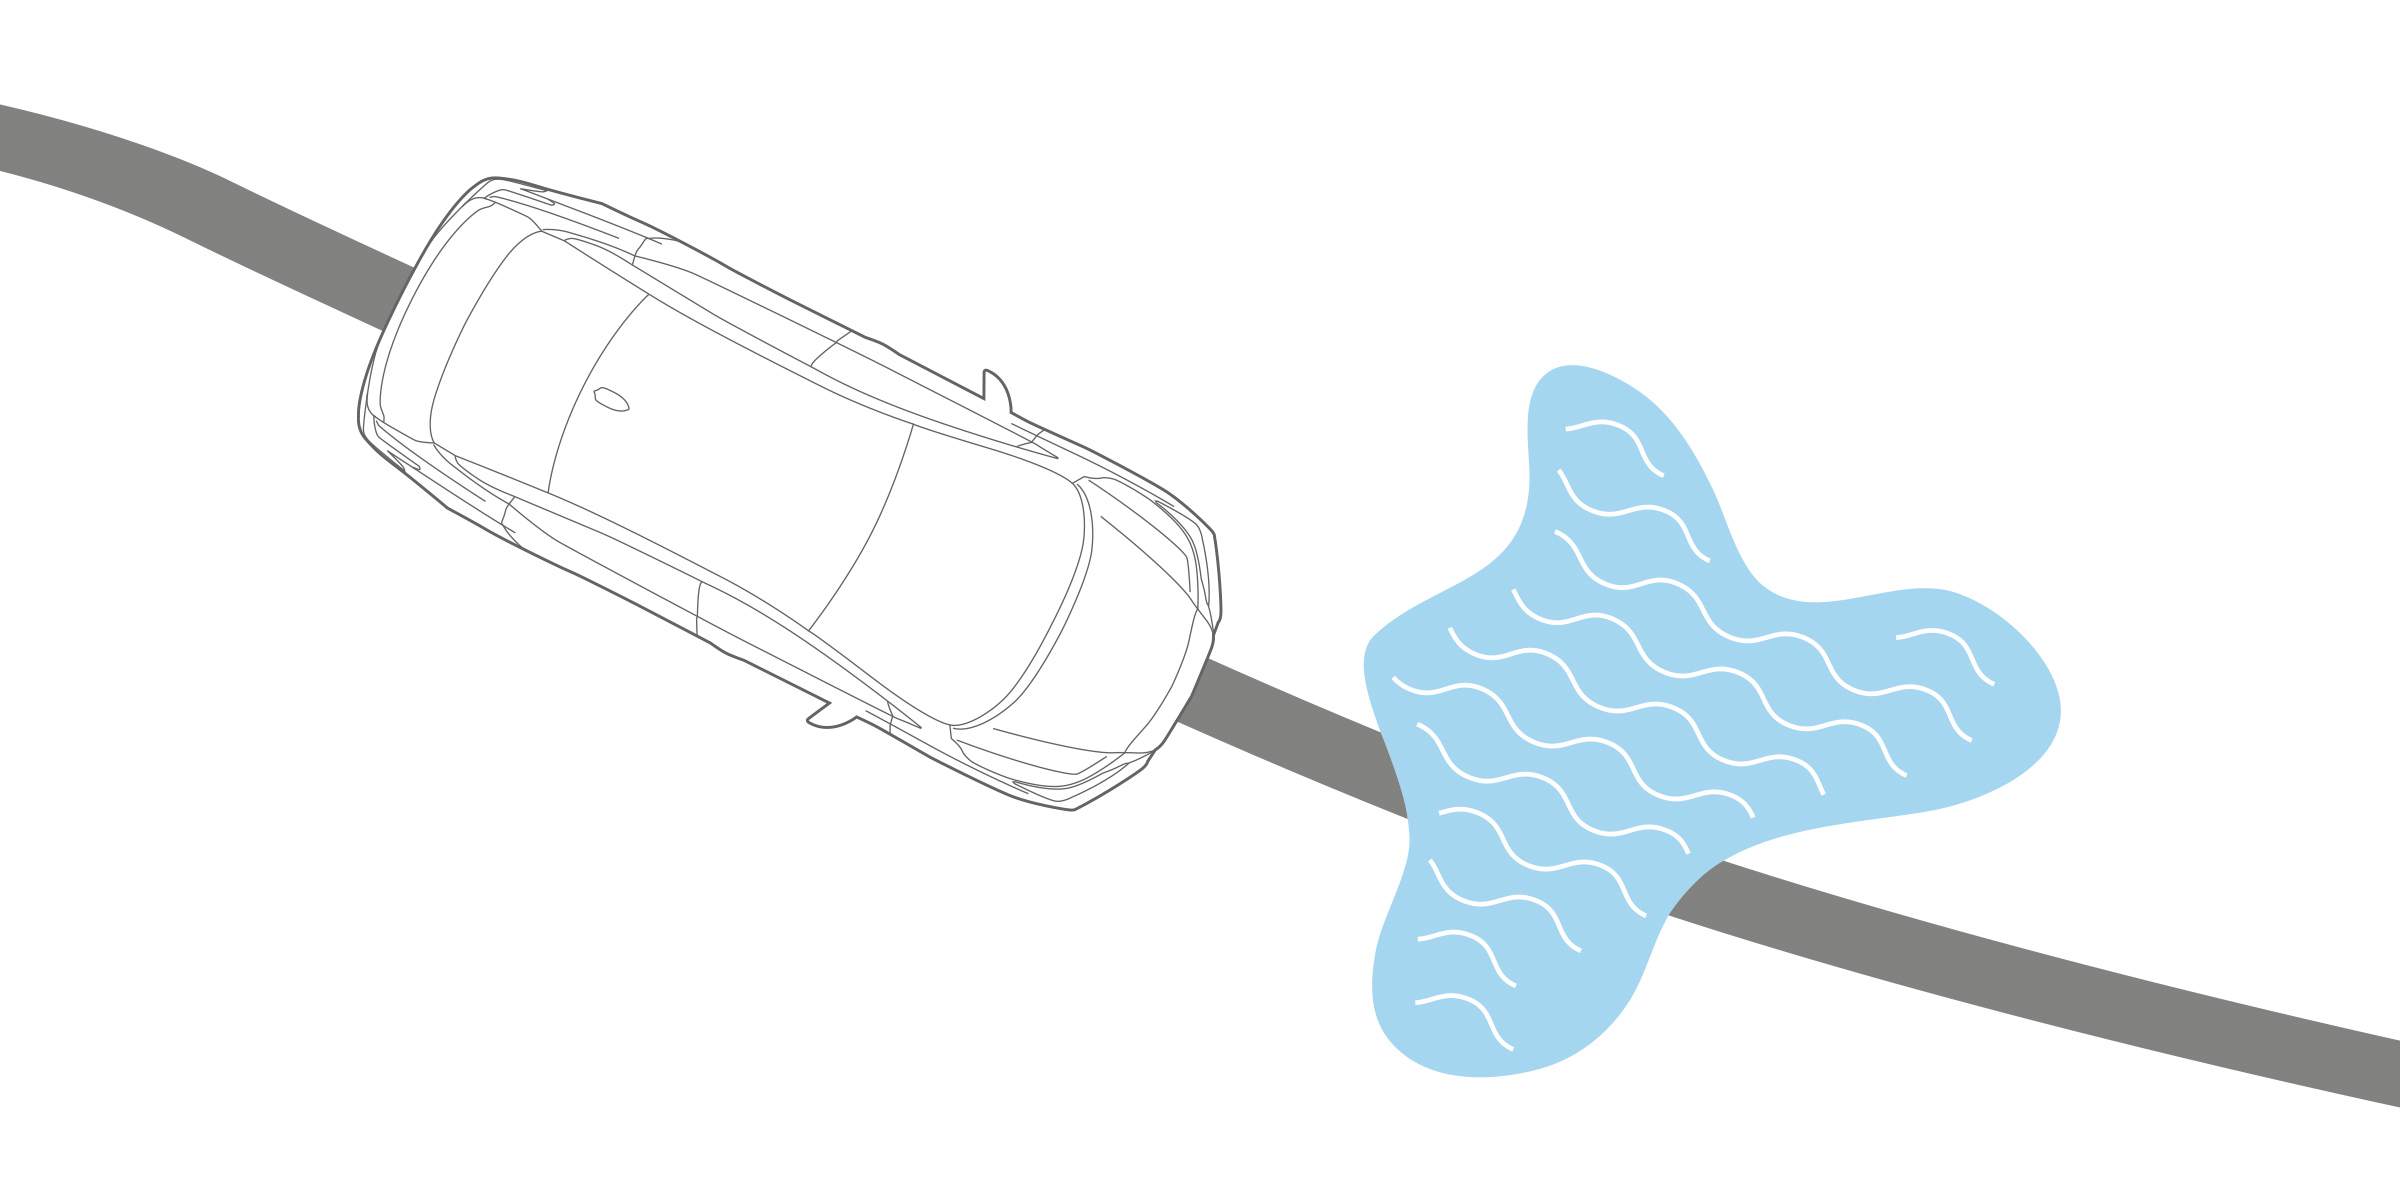 رسم توضيحي لنظام التحكم بالتشبث في سيارة نيسان صني